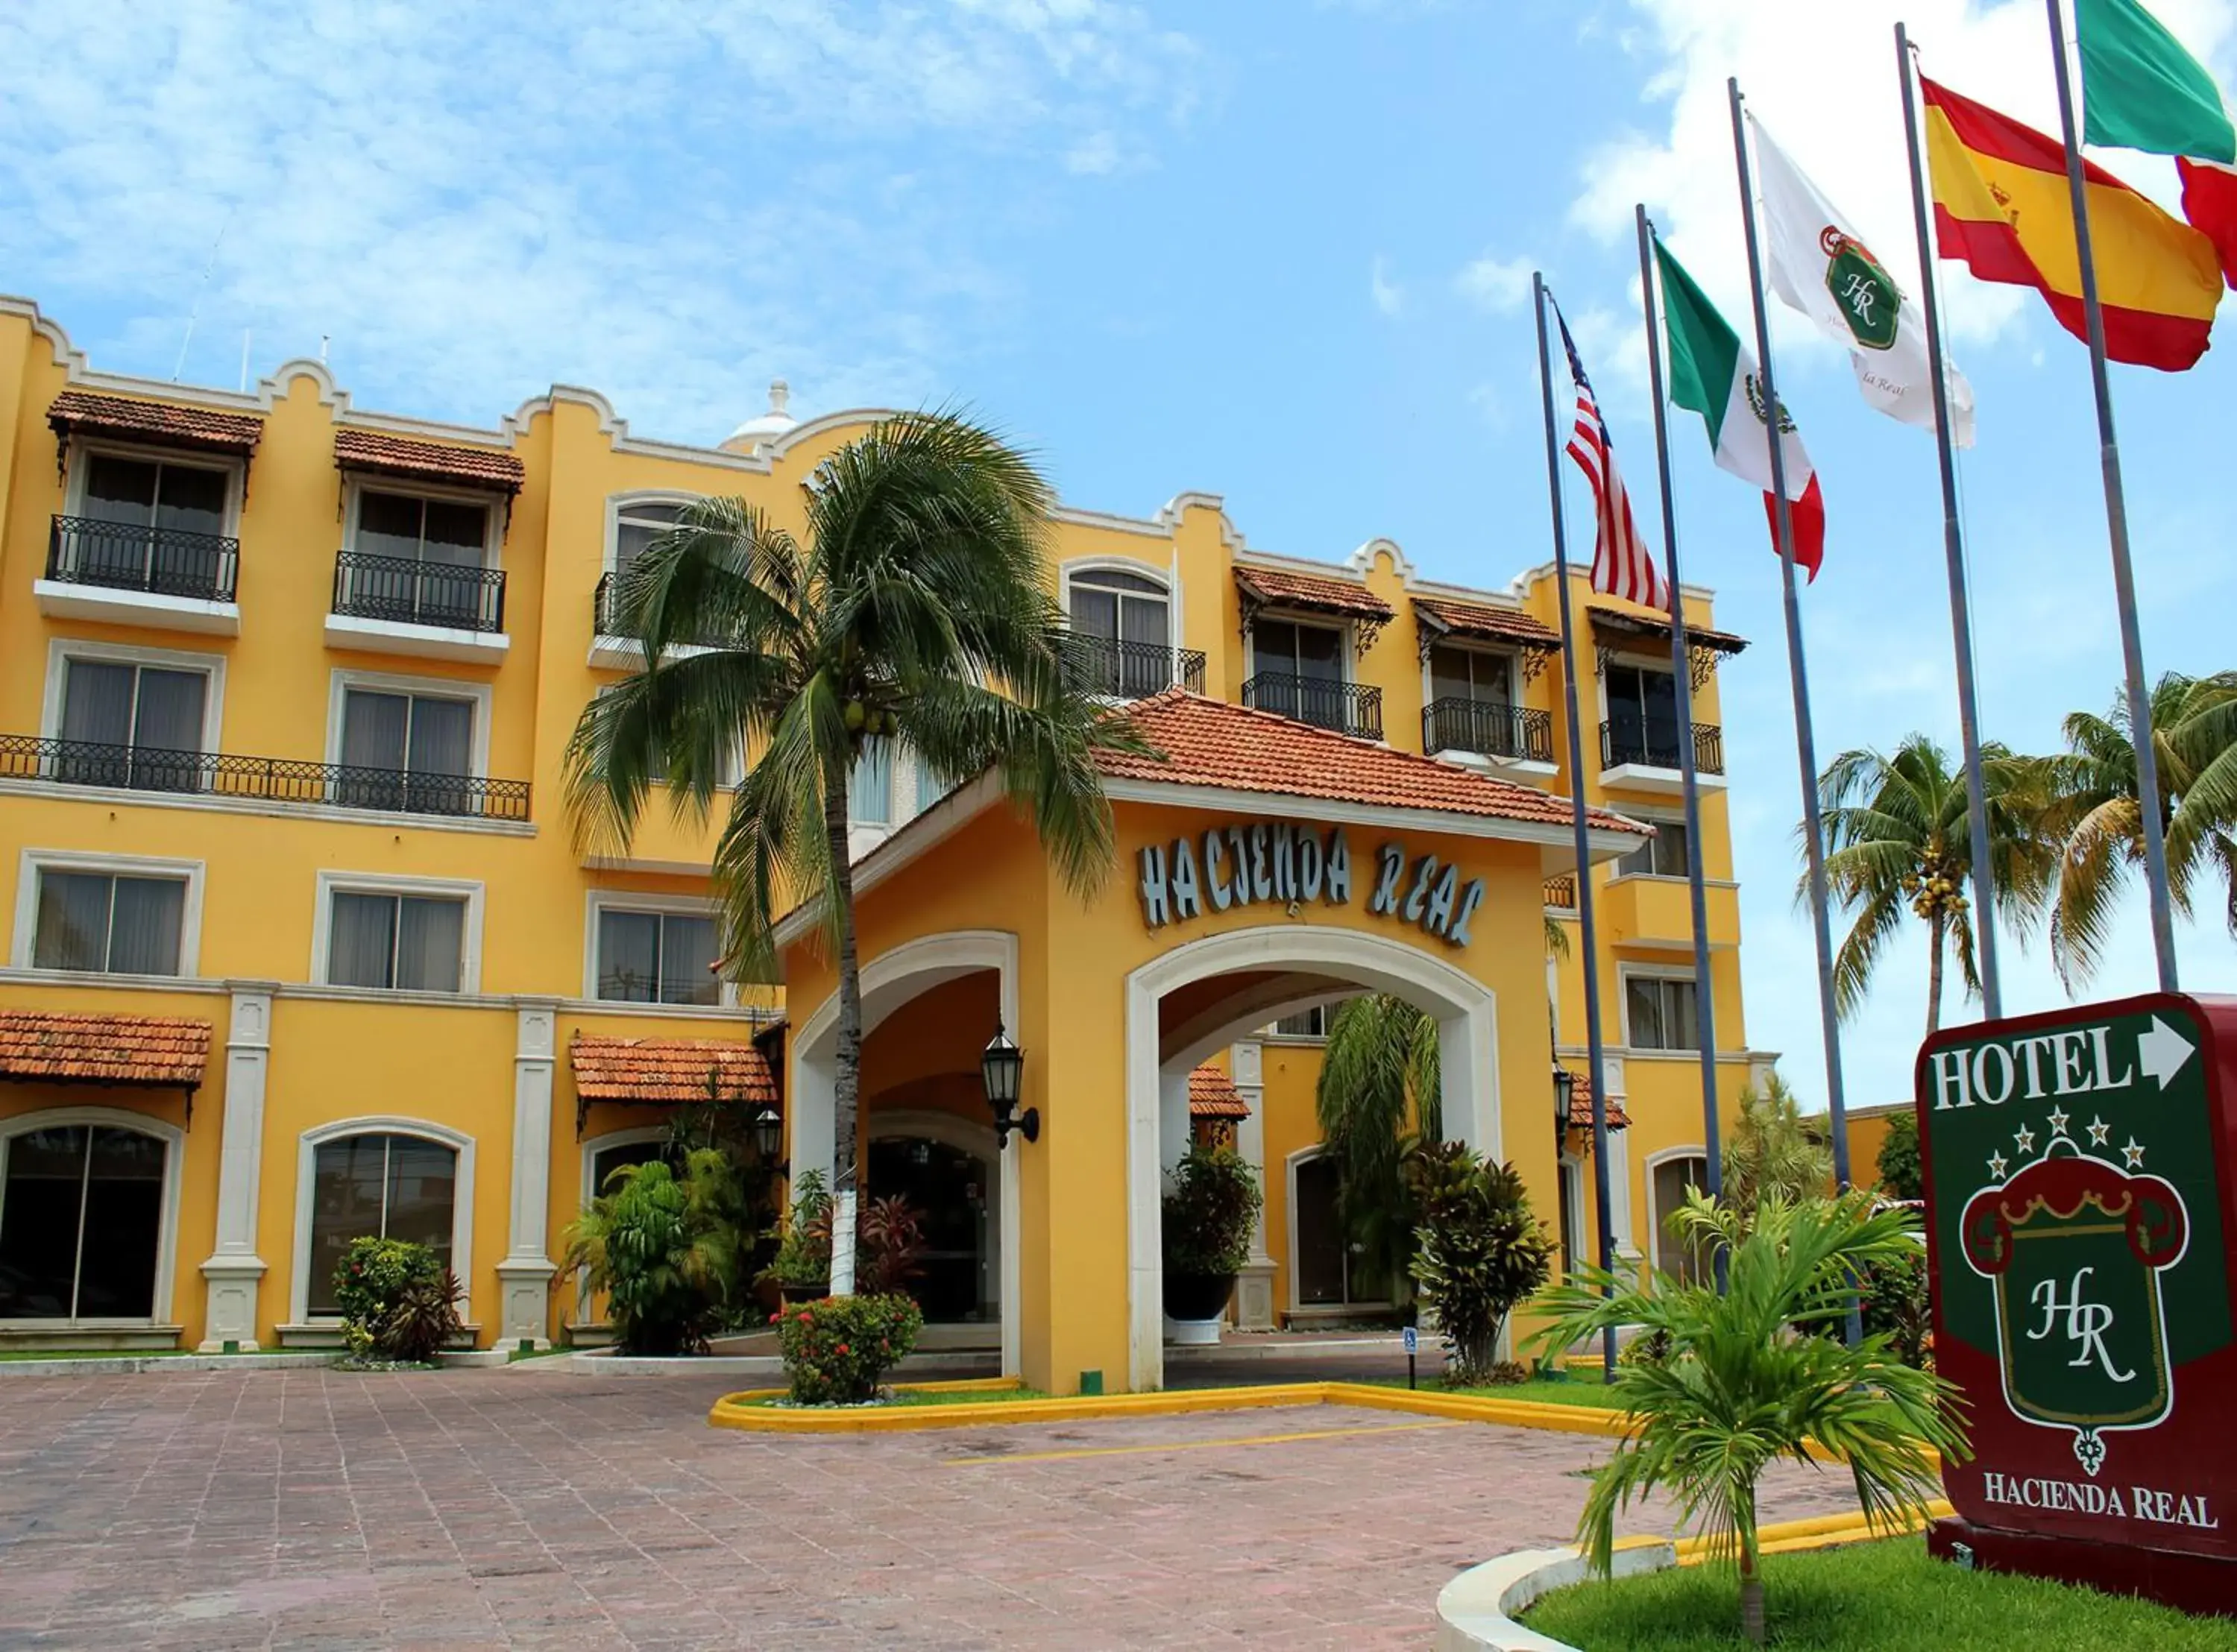 Property Building in Hotel Hacienda Real